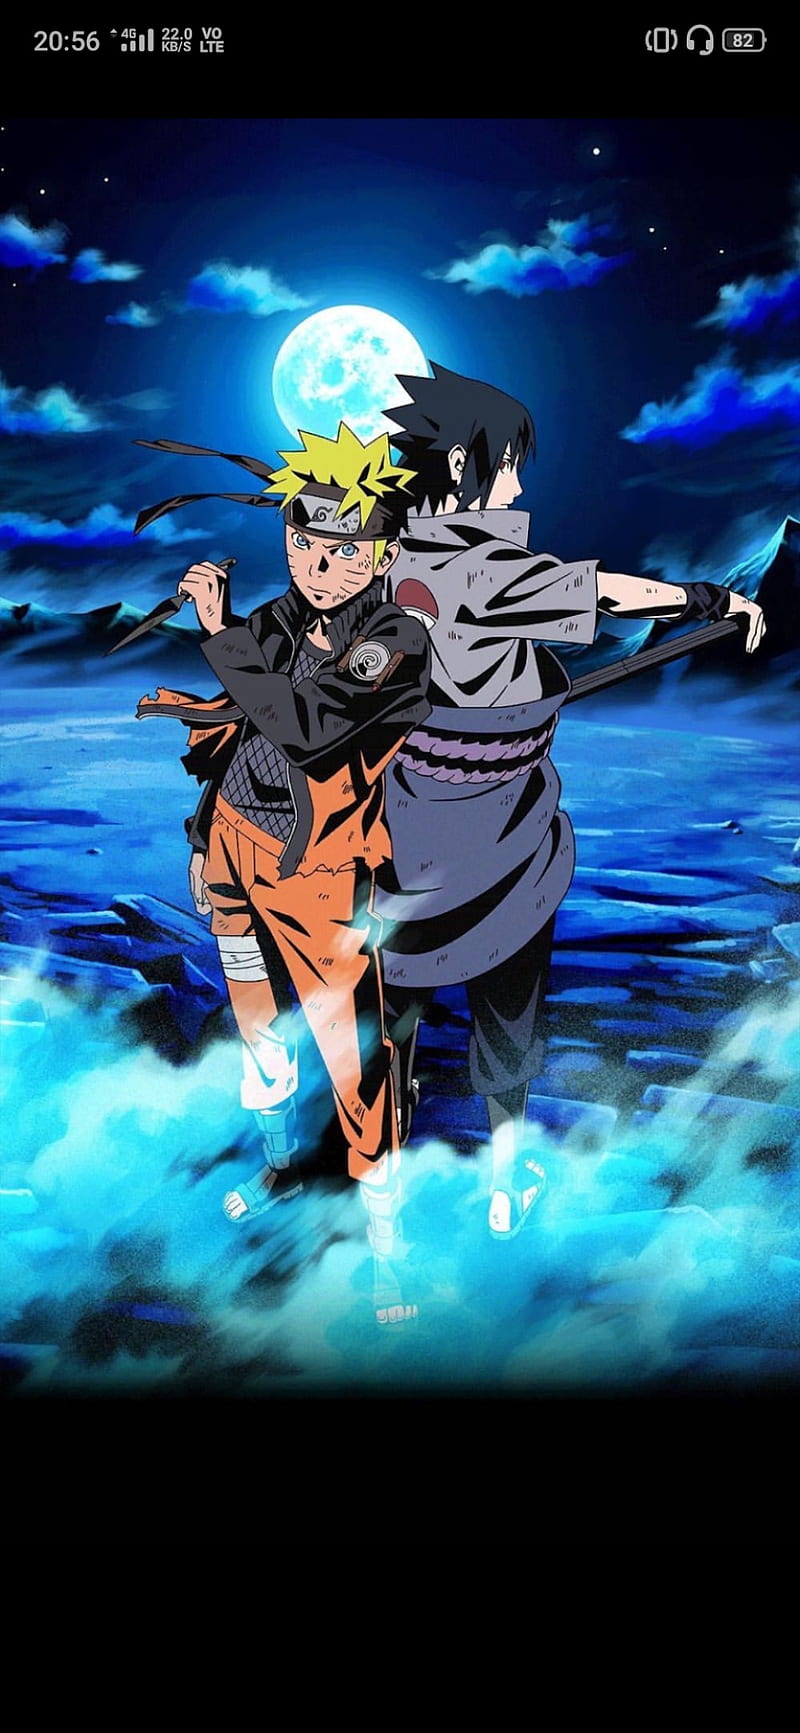 Naruto Sasuke Chakra - Một khám phá mới về sức mạnh đáng kinh ngạc của hai nhân vật Naruto và Sasuke. Đừng bỏ lỡ cơ hội khám phá về chakra và những khả năng phi thường của họ bằng cách xem bức ảnh liên quan trên trang web của chúng tôi.